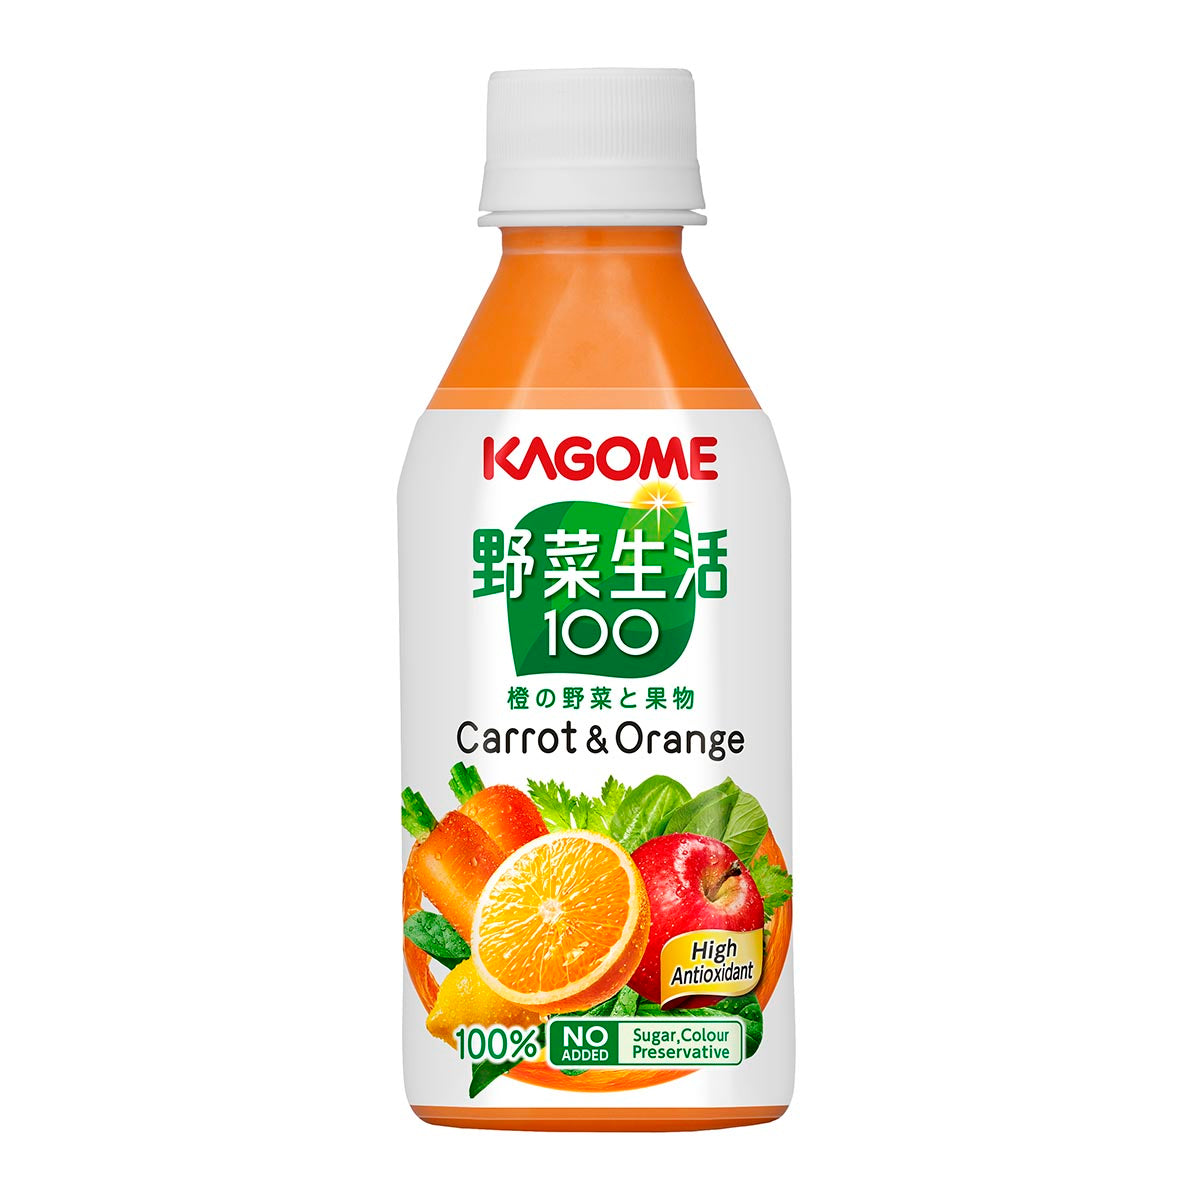 [原箱] KAGOME 野菜生活100 甘筍混合汁 24 x 280ml